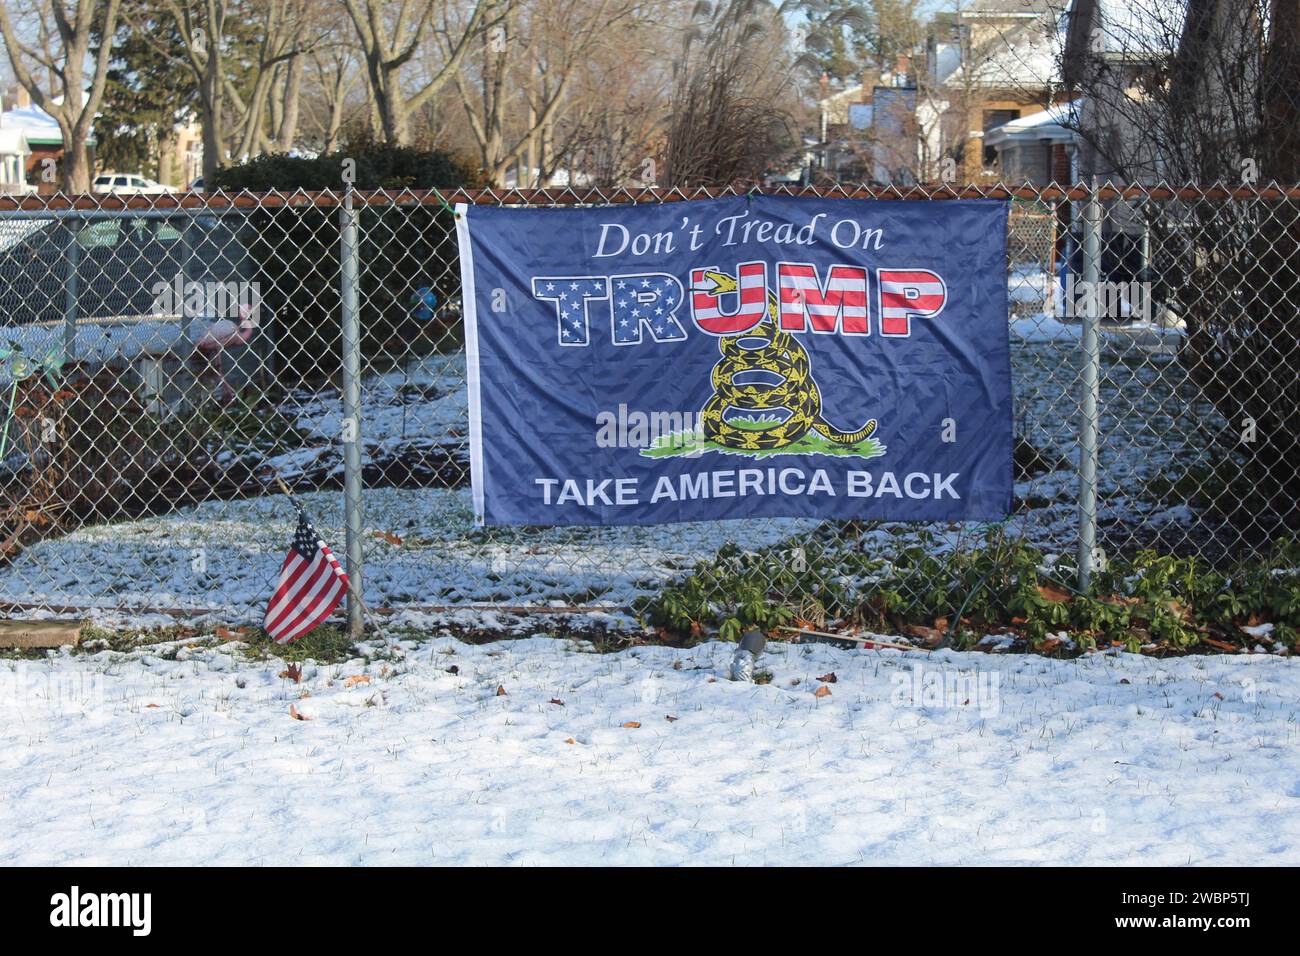 Im Winter in des Plaines, Illinois, darf man nicht auf Trumps Flagge am Zaun treten Stockfoto